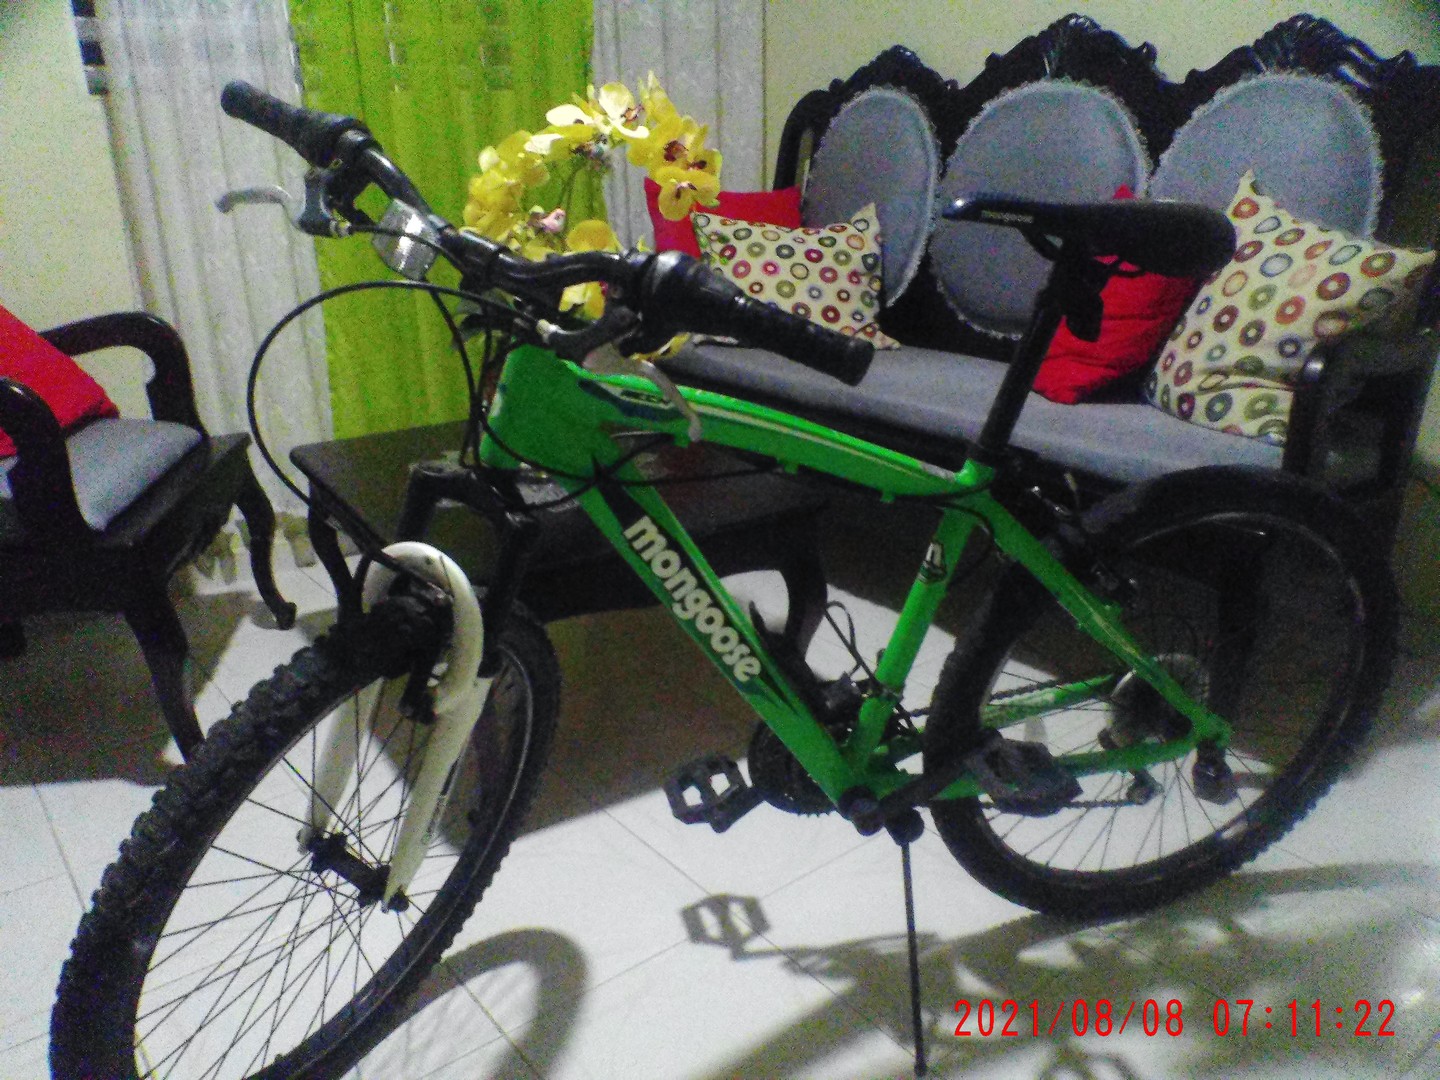 bicicletas y accesorios - Bicicleta Mongoose Aro 24 en Moca